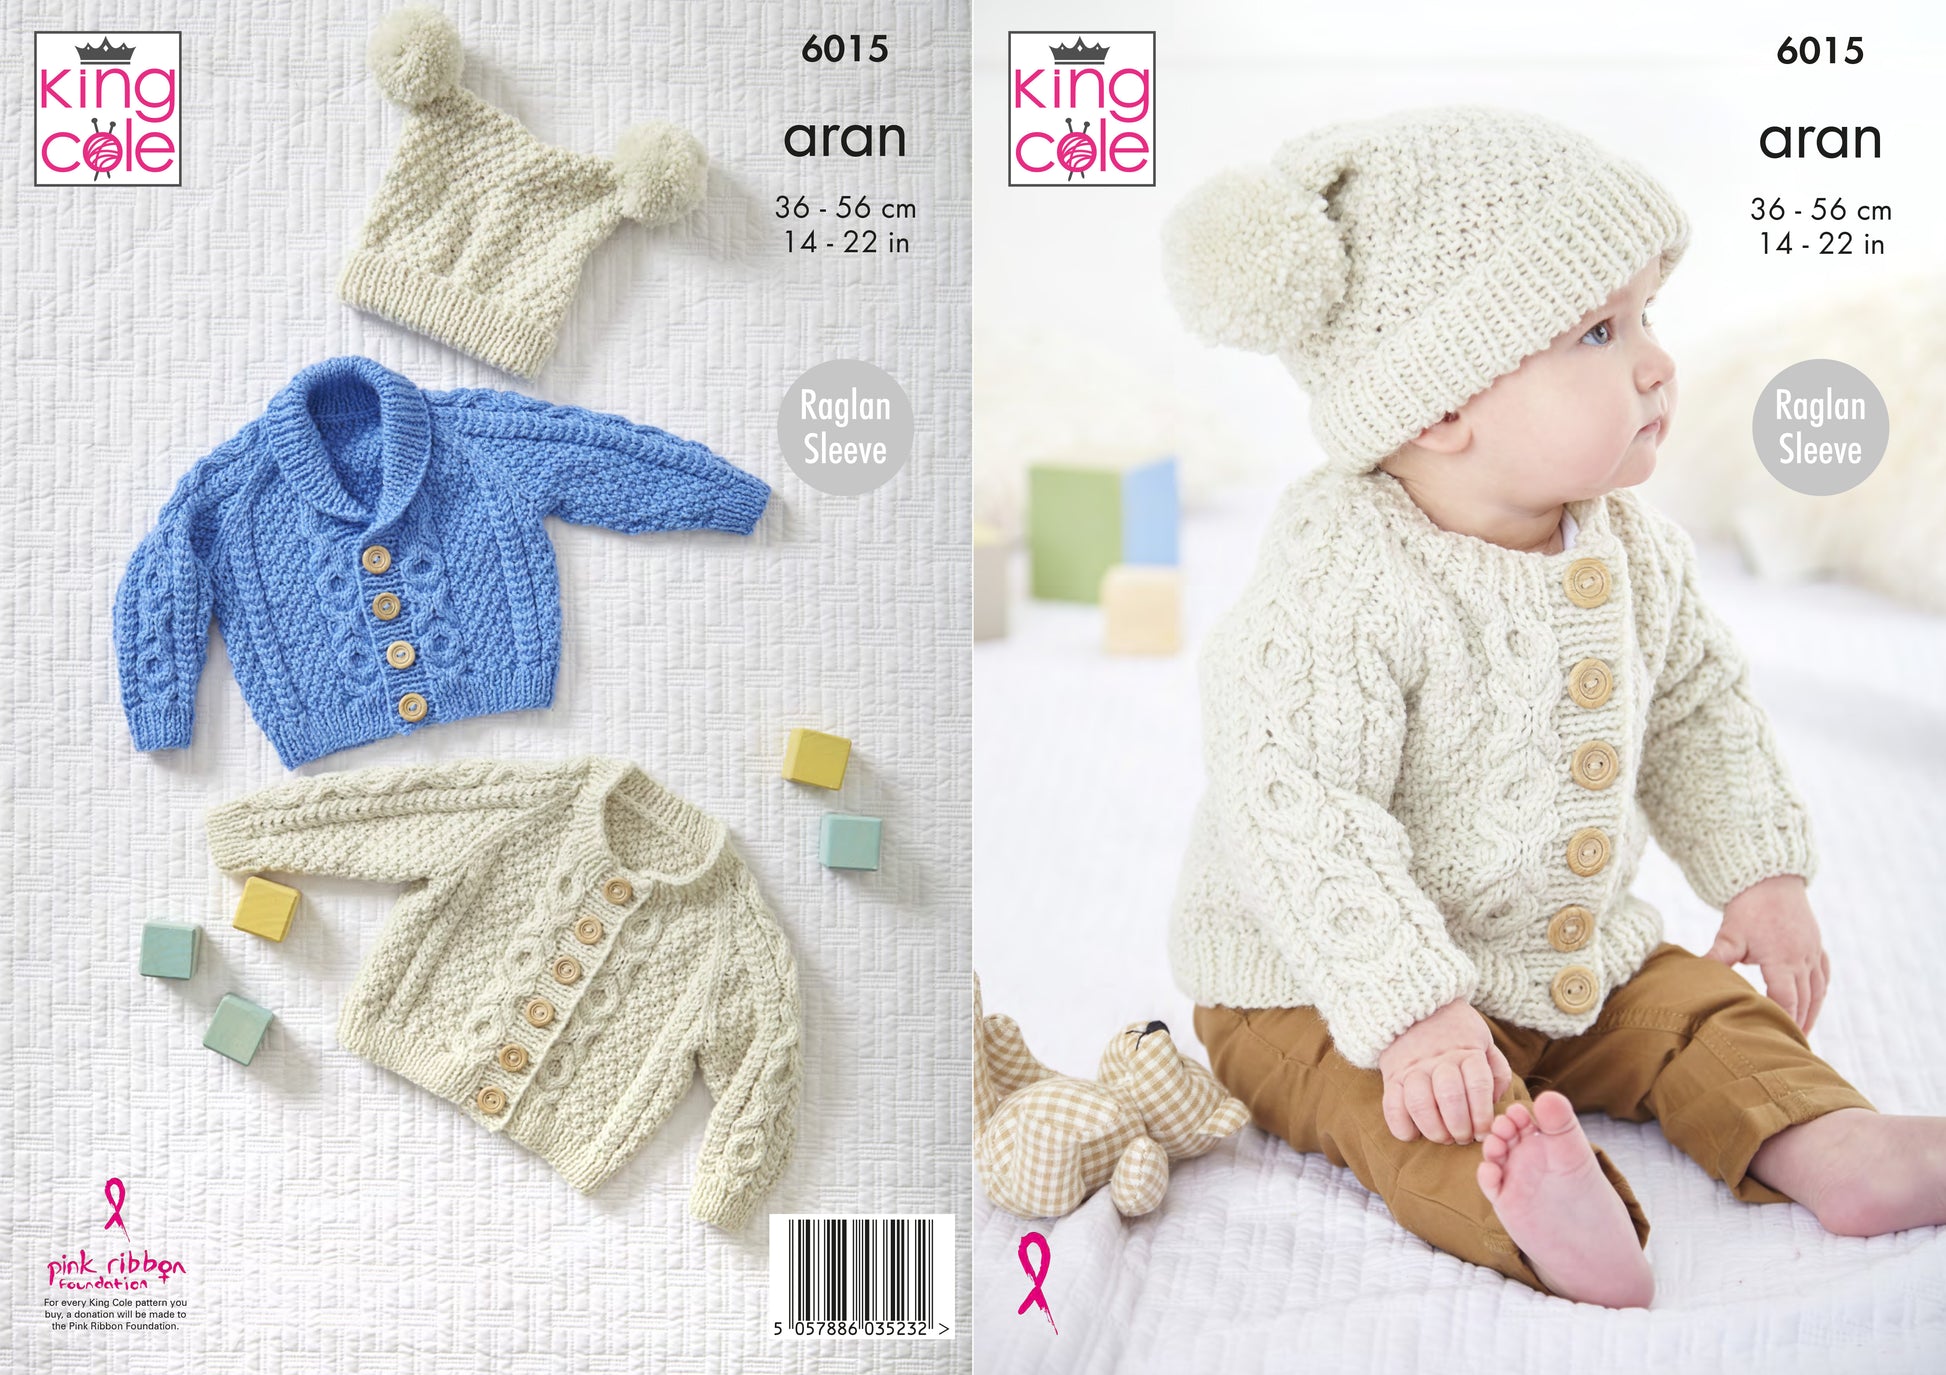 King Cole 6015 Baby Aran Cardigan Hat Knitting Pattern